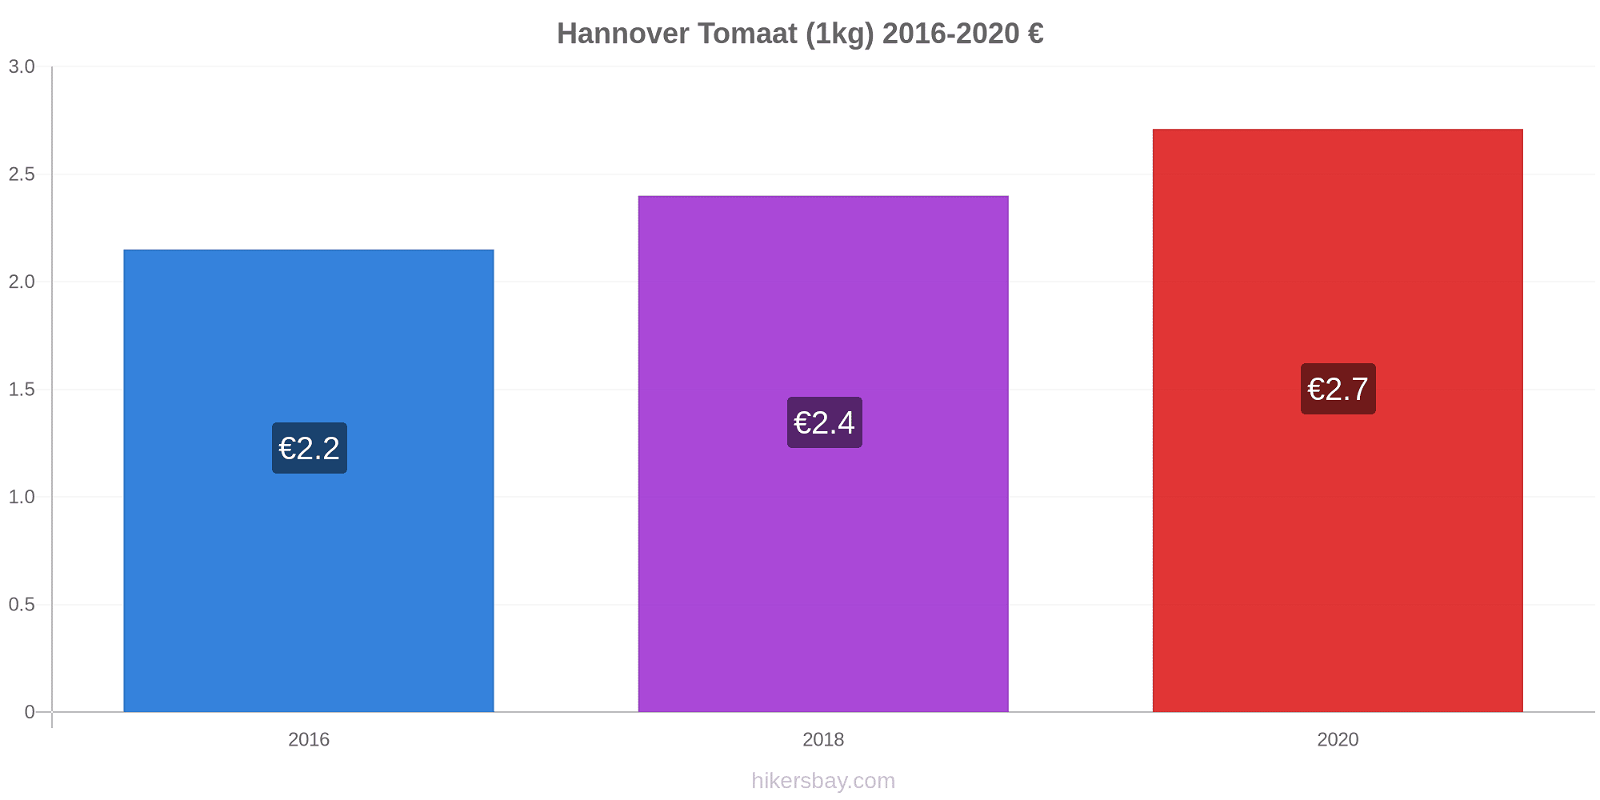 Hannover prijswijzigingen Tomaat (1kg) hikersbay.com